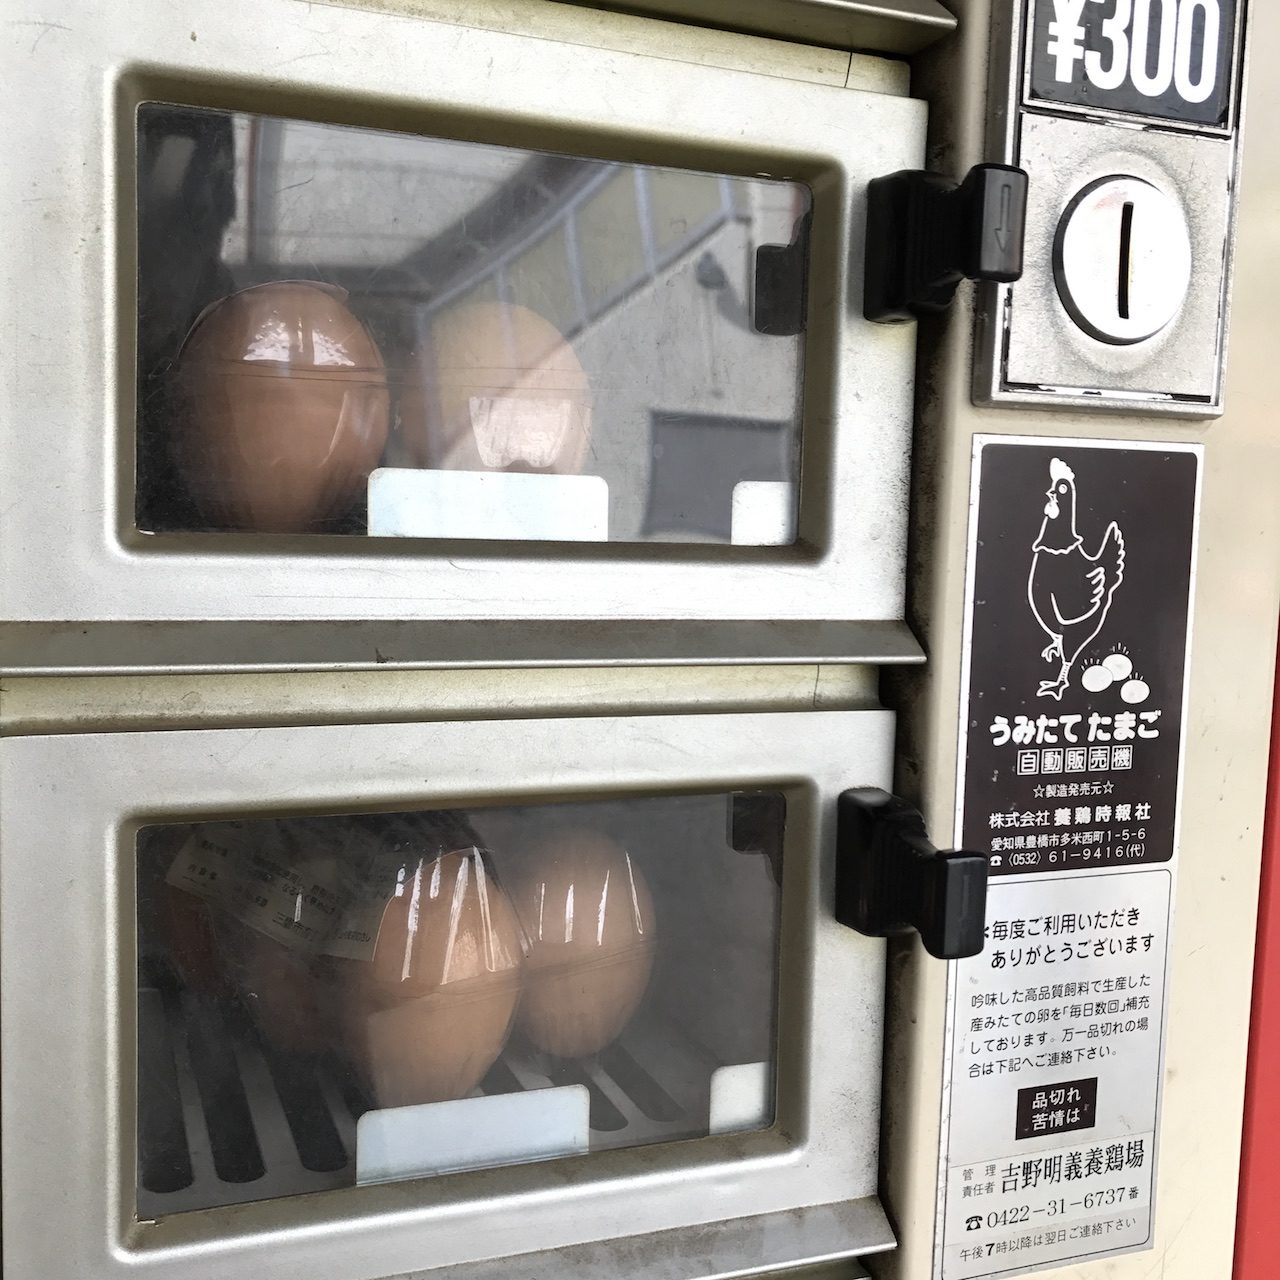 人気の平飼い卵、6個入り300円と少し高価ながら常に需要が上回る